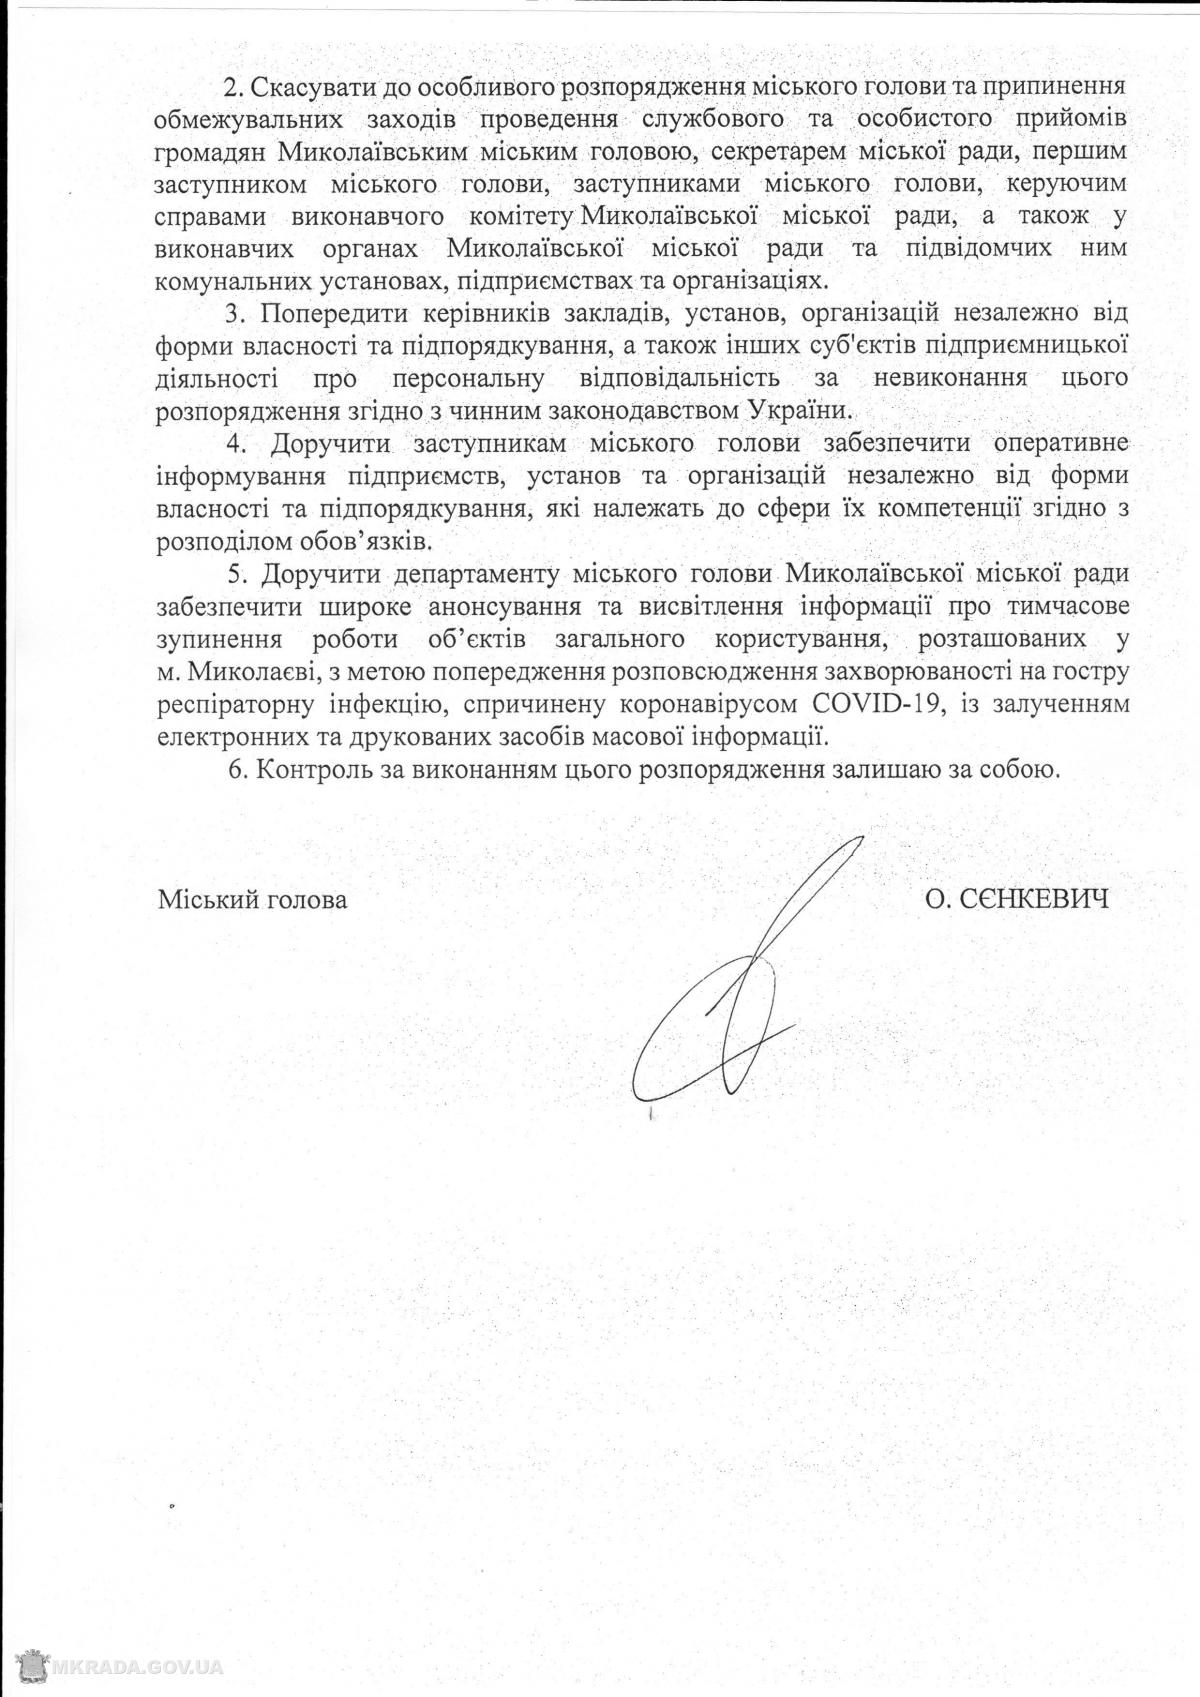 Распоряжение мэра Николаева / mkrada.gov.ua